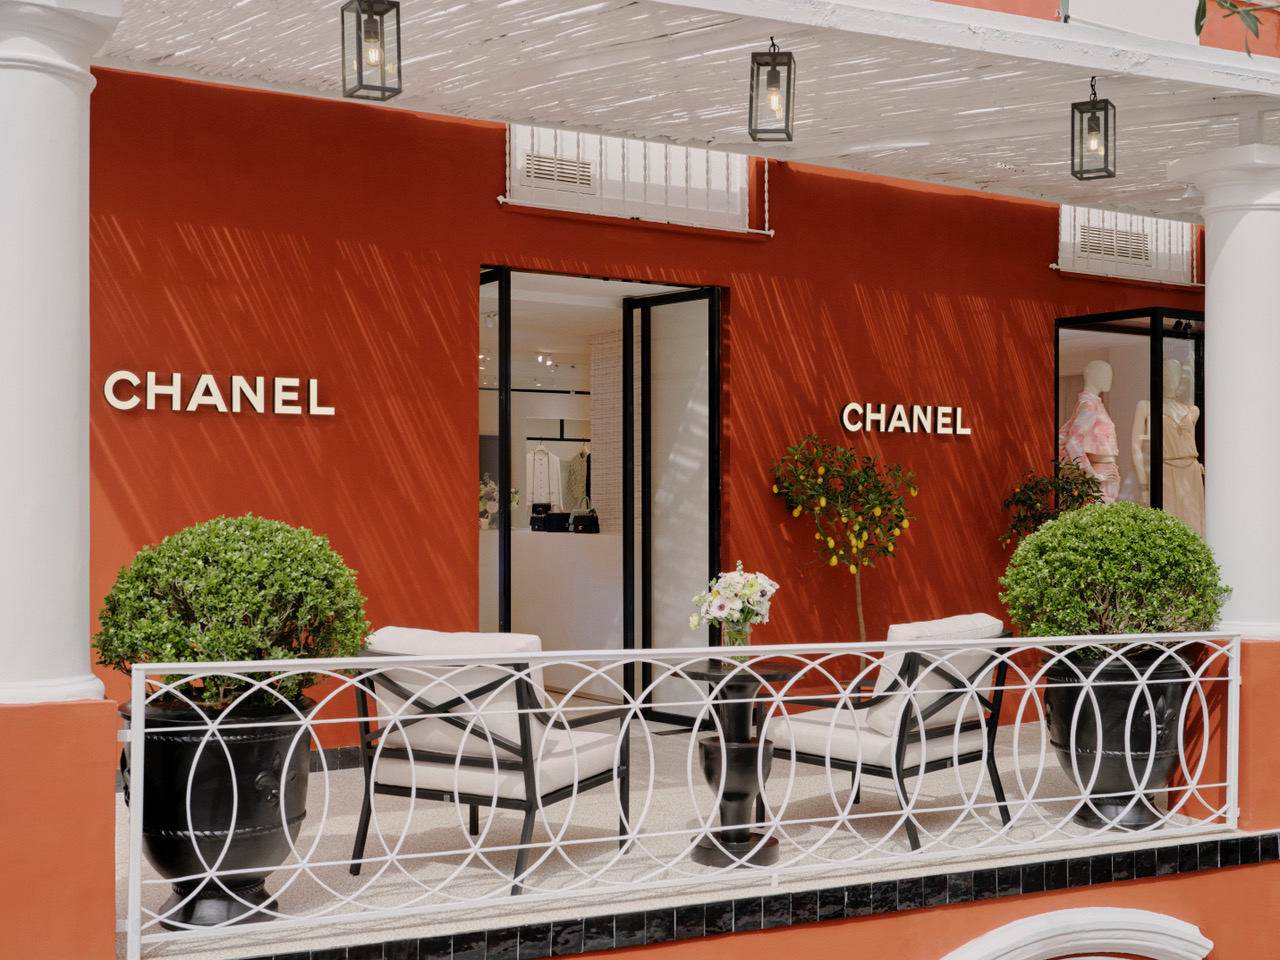 Chanel Opens a Summer Boutique in Capri - A&E Magazine